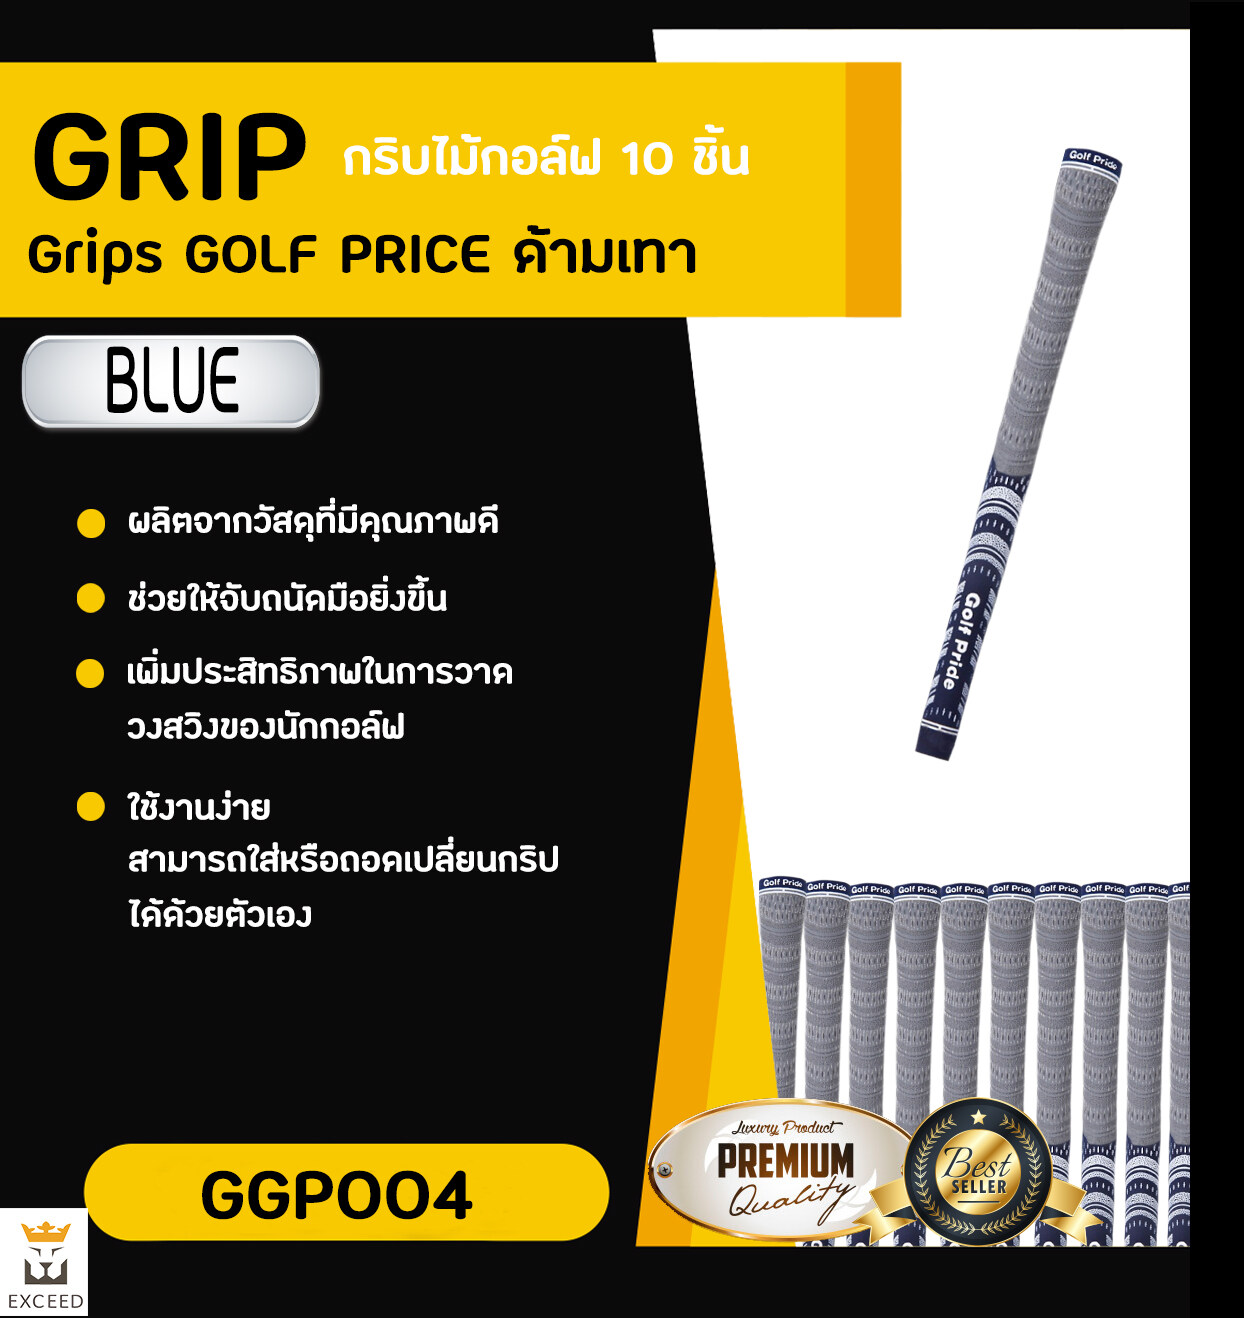 กริบไม้กอล์ฟ Golf Grip 10 ชิ้น Exceed ：ด้ามเทา มีหลากหลายสีให้เลือก ในราคาพิเศษ GGP004